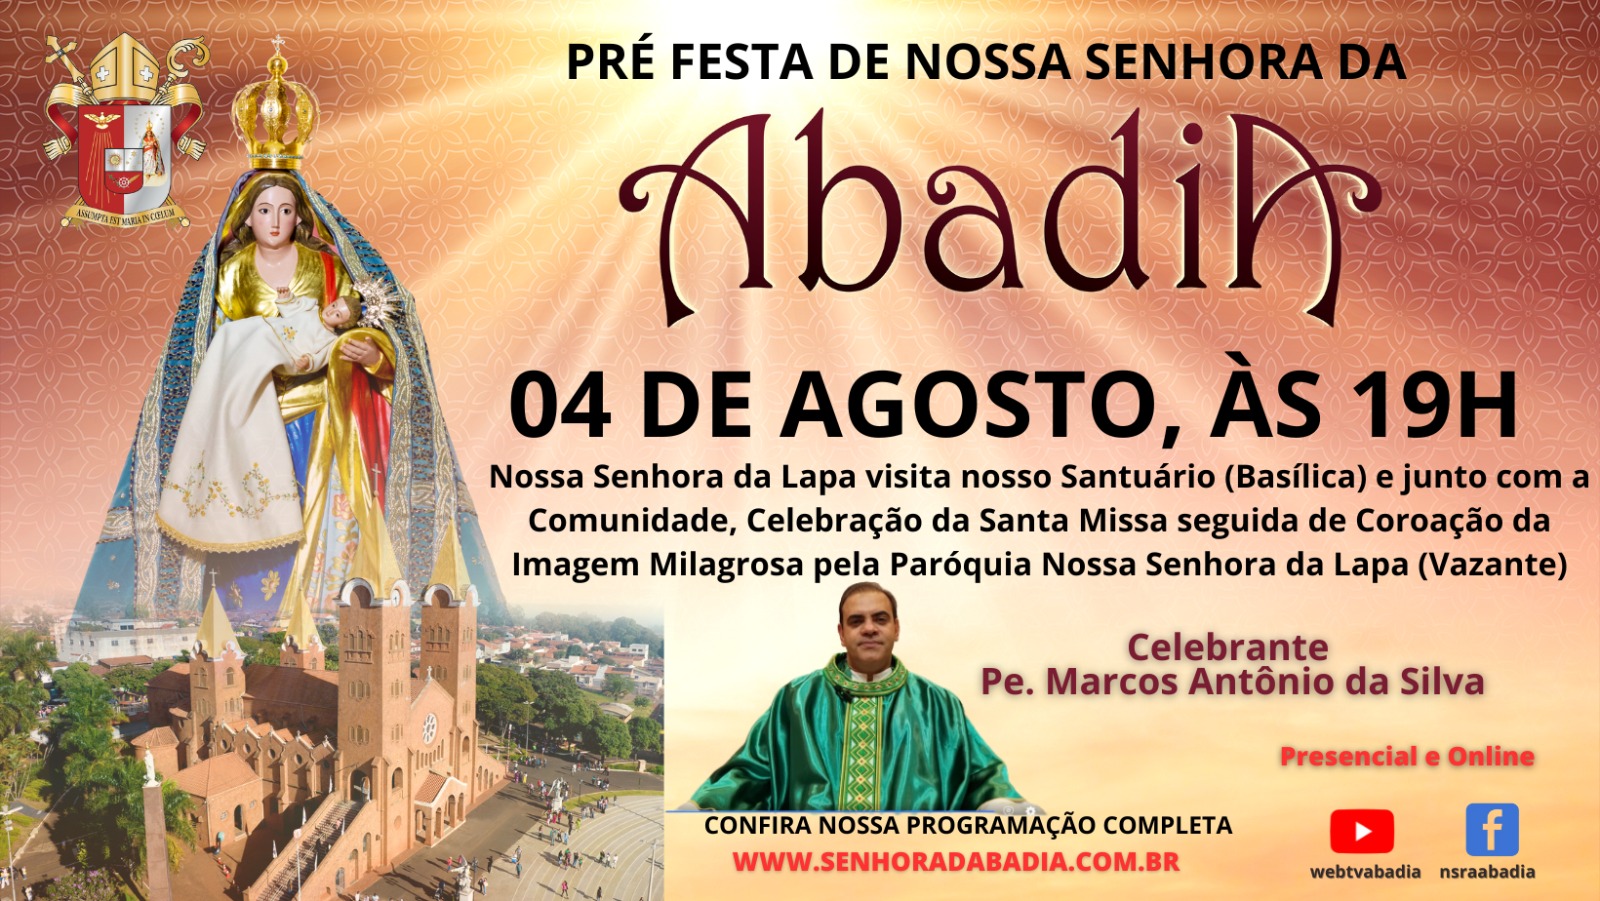 Pre Festa de Nossa Senhora da Abadia - Missa com Pe. Marcos - 04/08